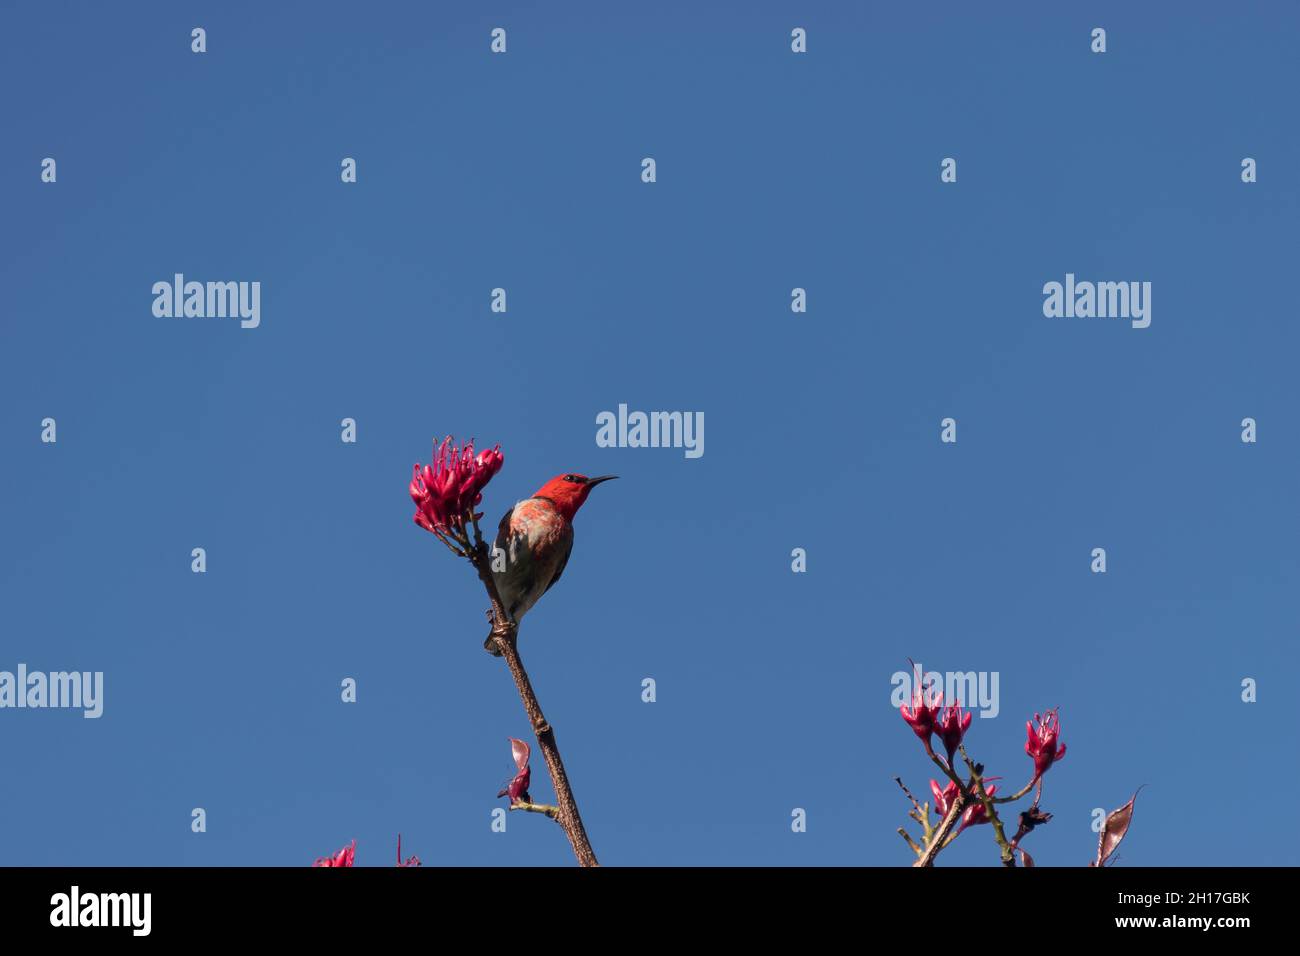 Männliche scharlachrote Honeyeater, Myzomela sanguinolenta, die sich von Nektar aus roten, betrunkenen Papageienbaumblüten ernährt. Blauer Himmel, Kopierbereich. Queensland, Australien. Stockfoto